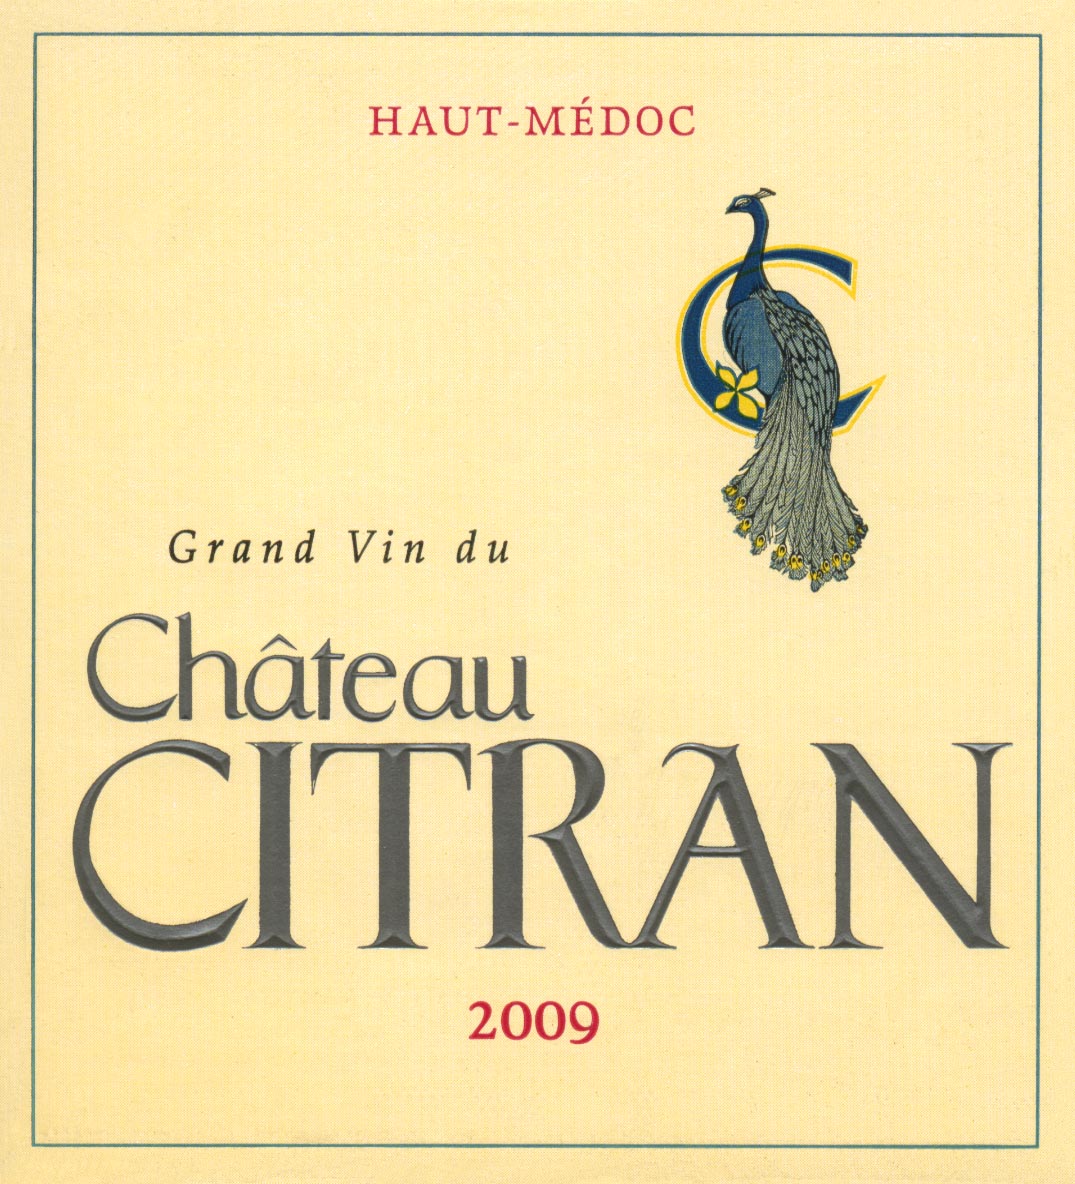 Château Citran AOC Haut-Médoc Red 2009